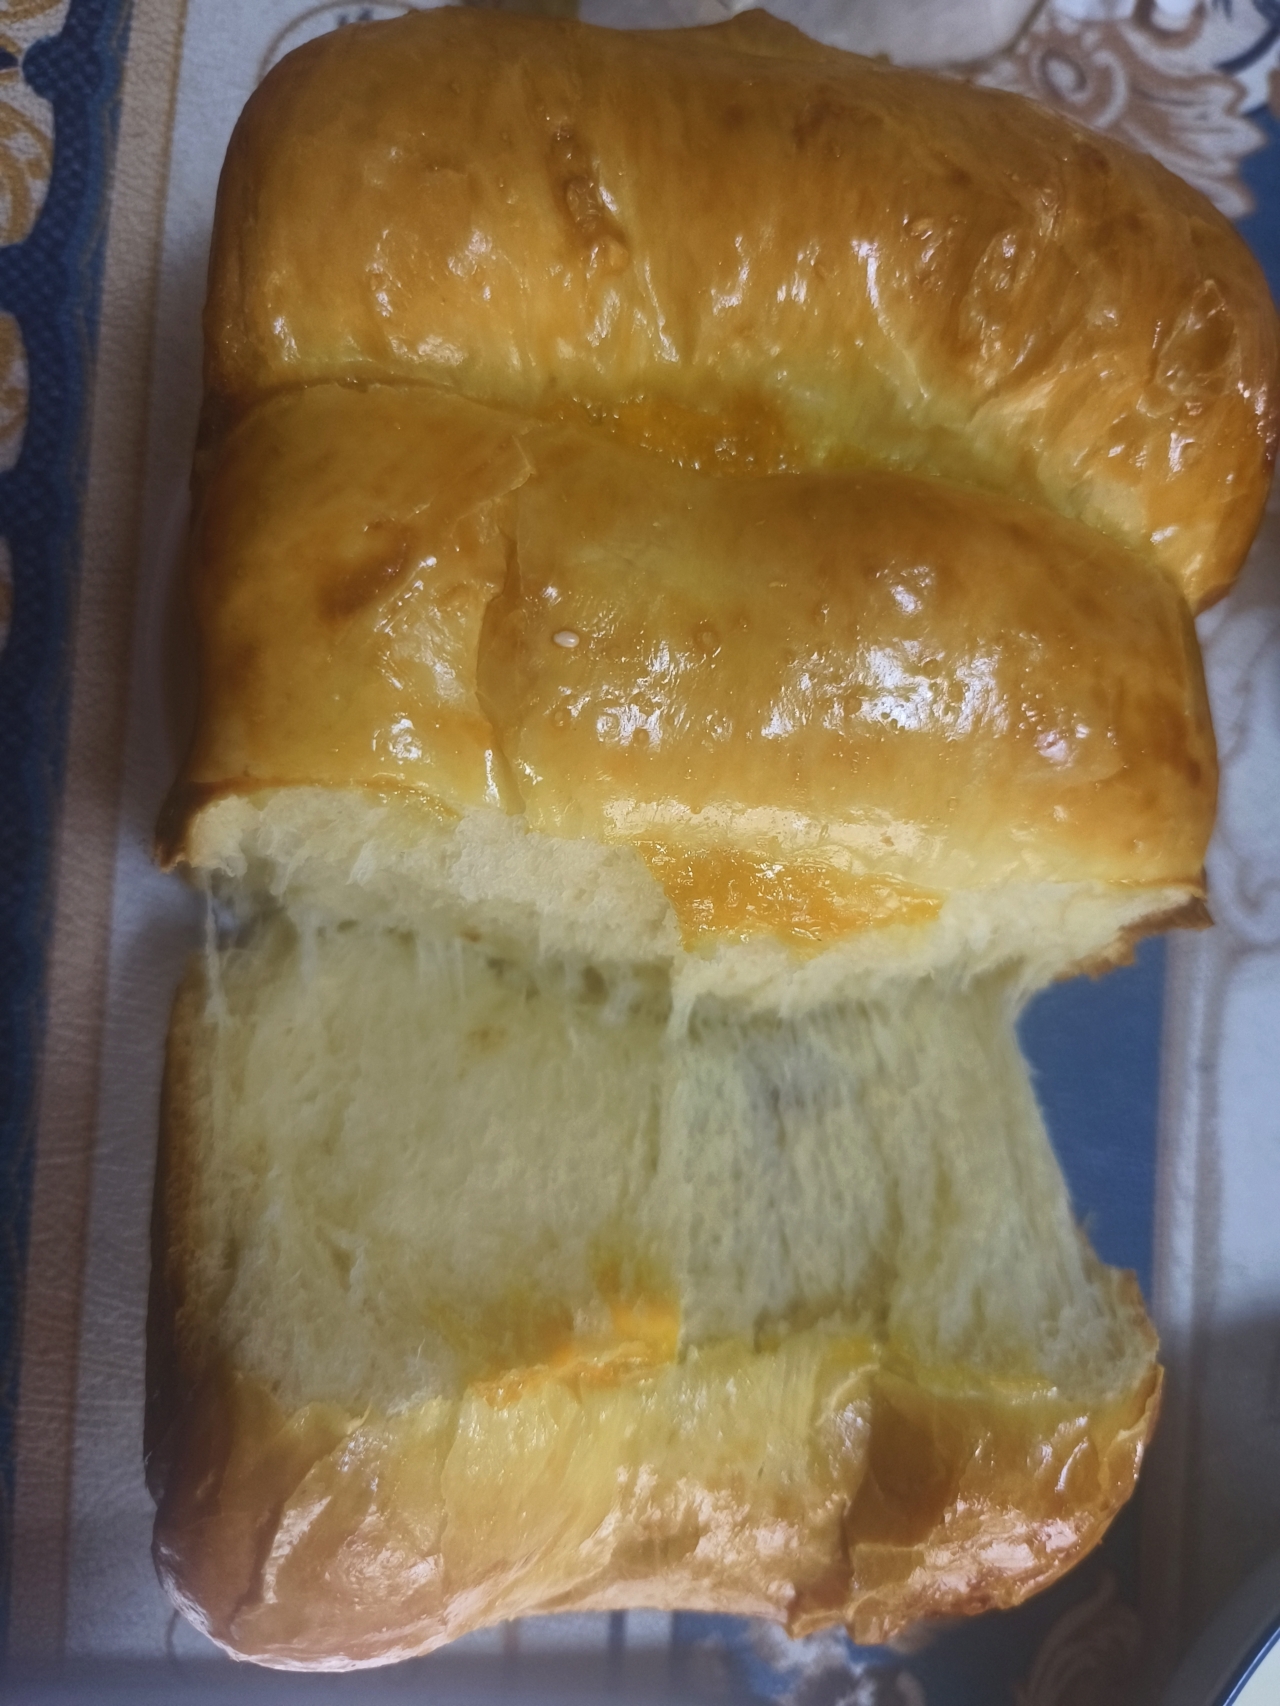 柏翠面包机-超软拉丝吐司面包一次性发酵